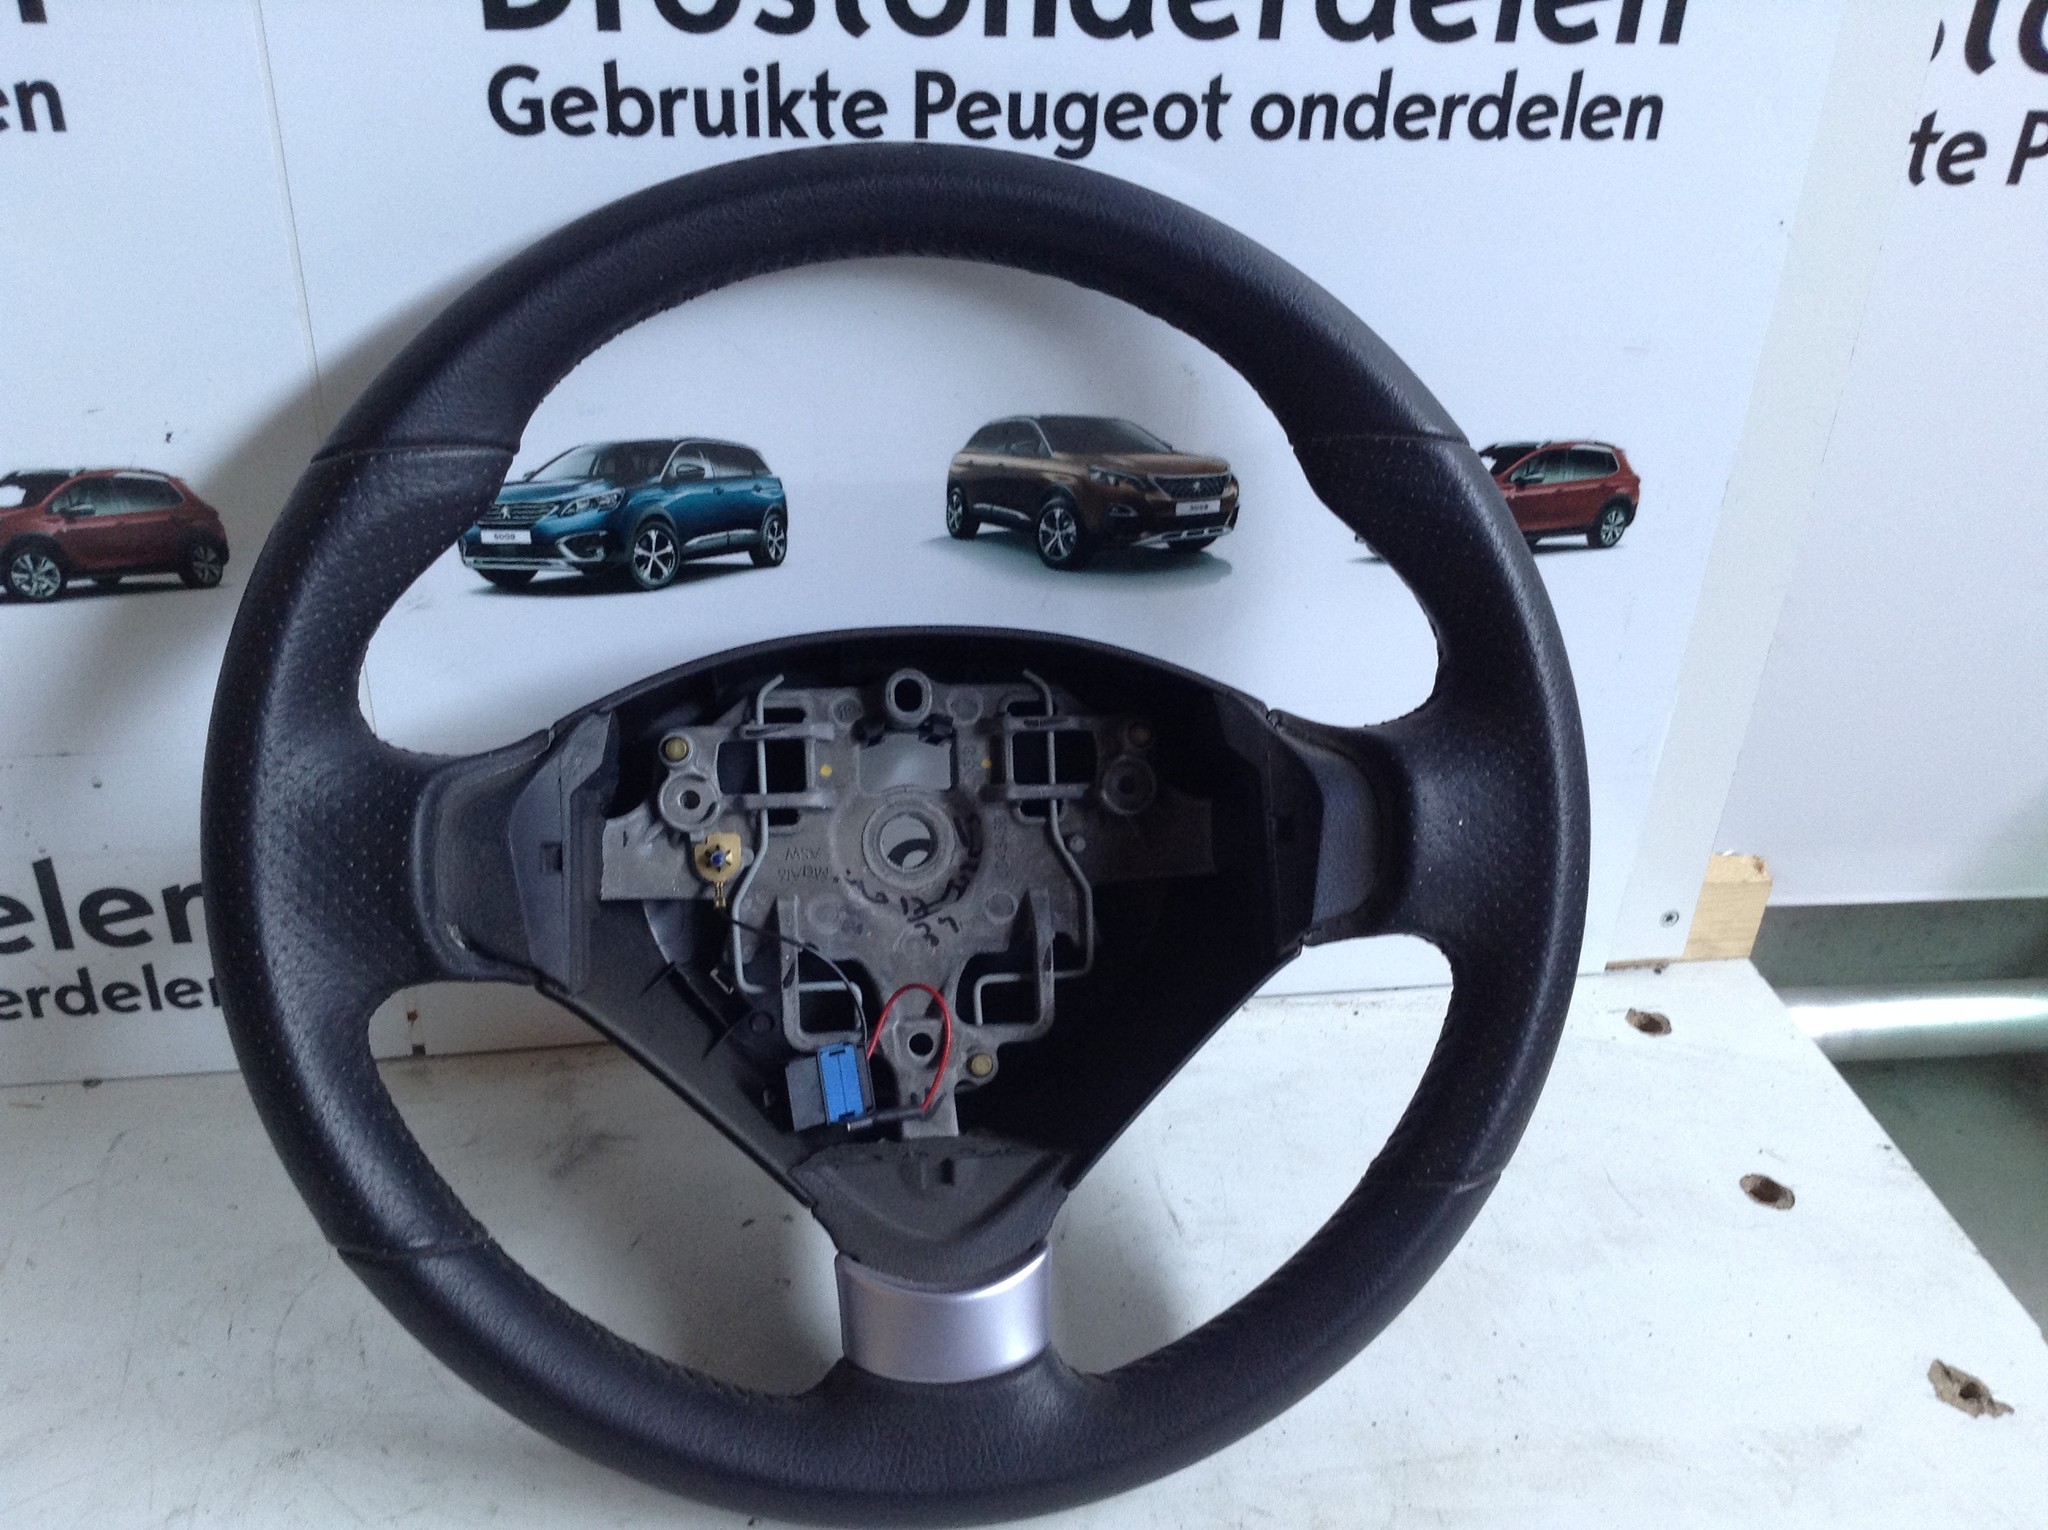 Maken dump Makkelijk in de omgang Plakkend stuur - Peugeot Meeting